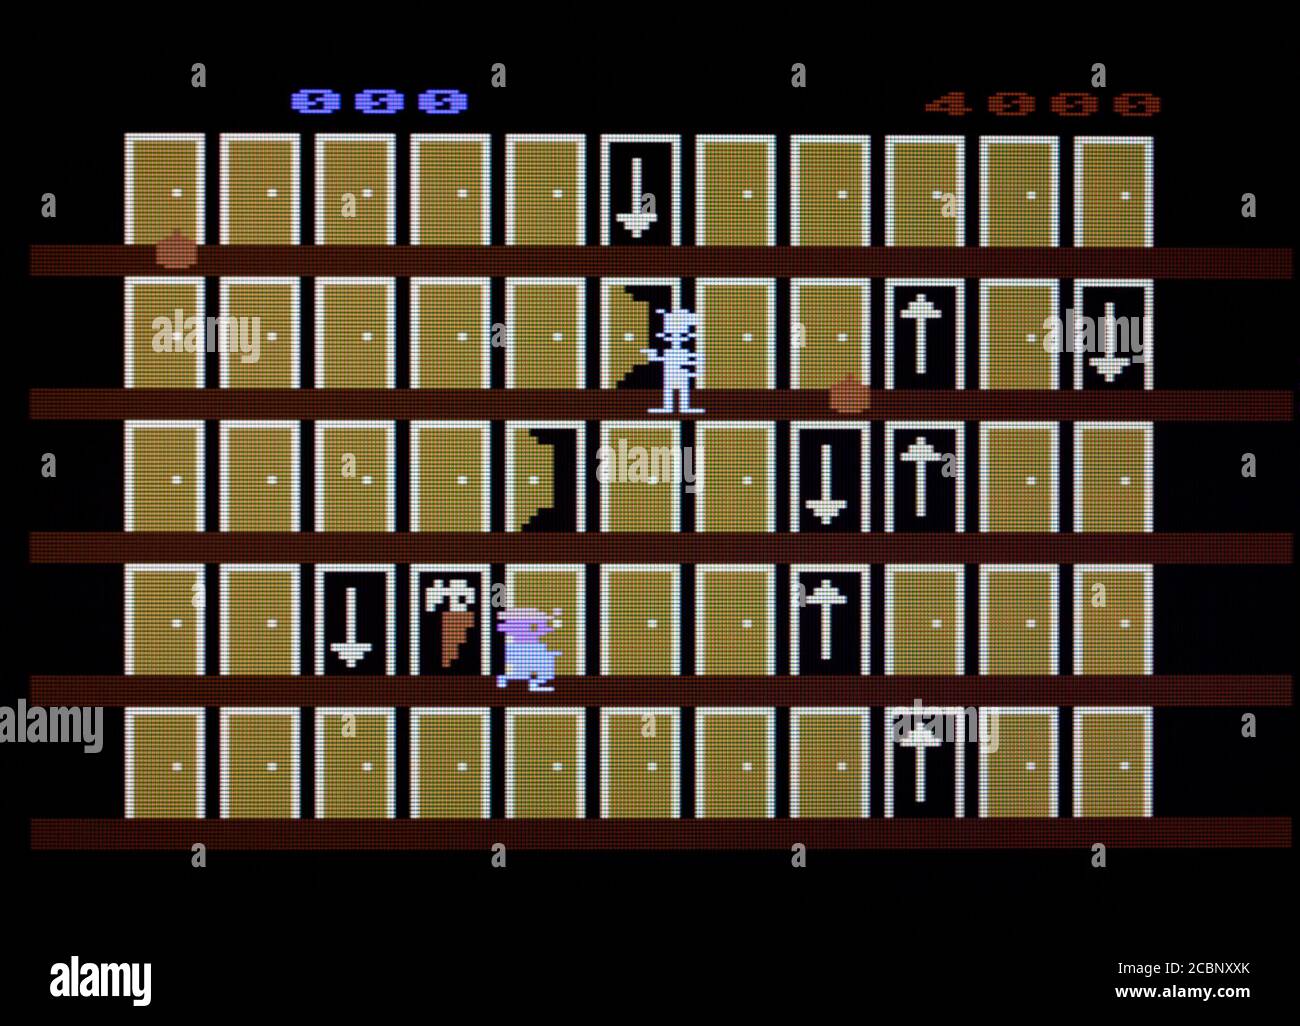 Looney Tunes Hotel - Atari 5200 - nur zur redaktionellen Verwendung Stockfoto